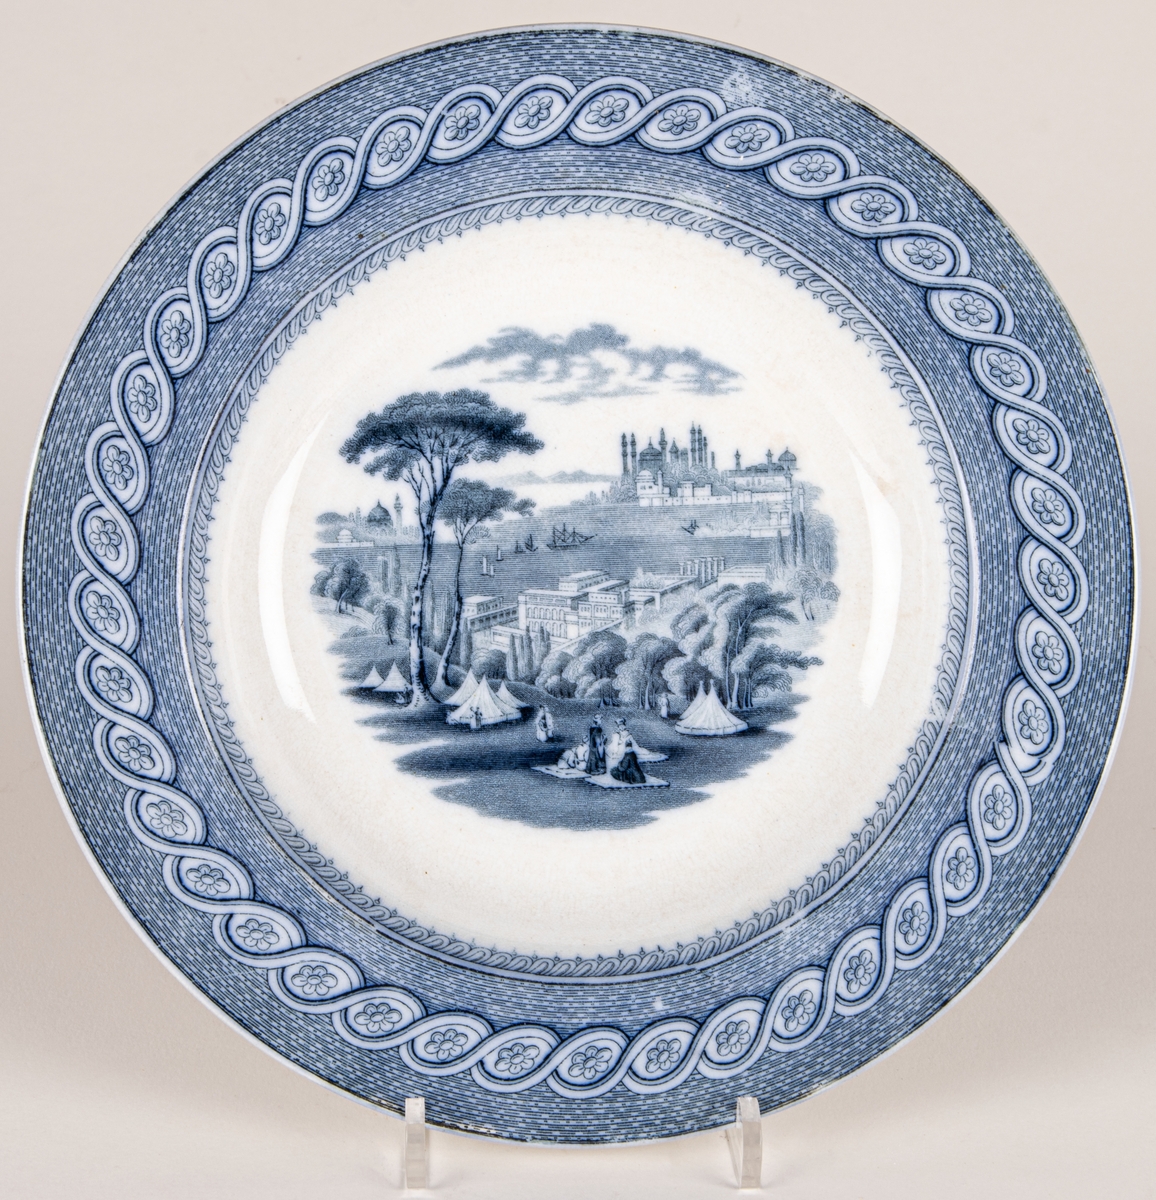 Tallrik, djup, fajans, blå dekor, stämplade med kartusch, märkt: "Byzantium JR & C". 
John Ridgway & Co, Shelton, England 1841-1855.